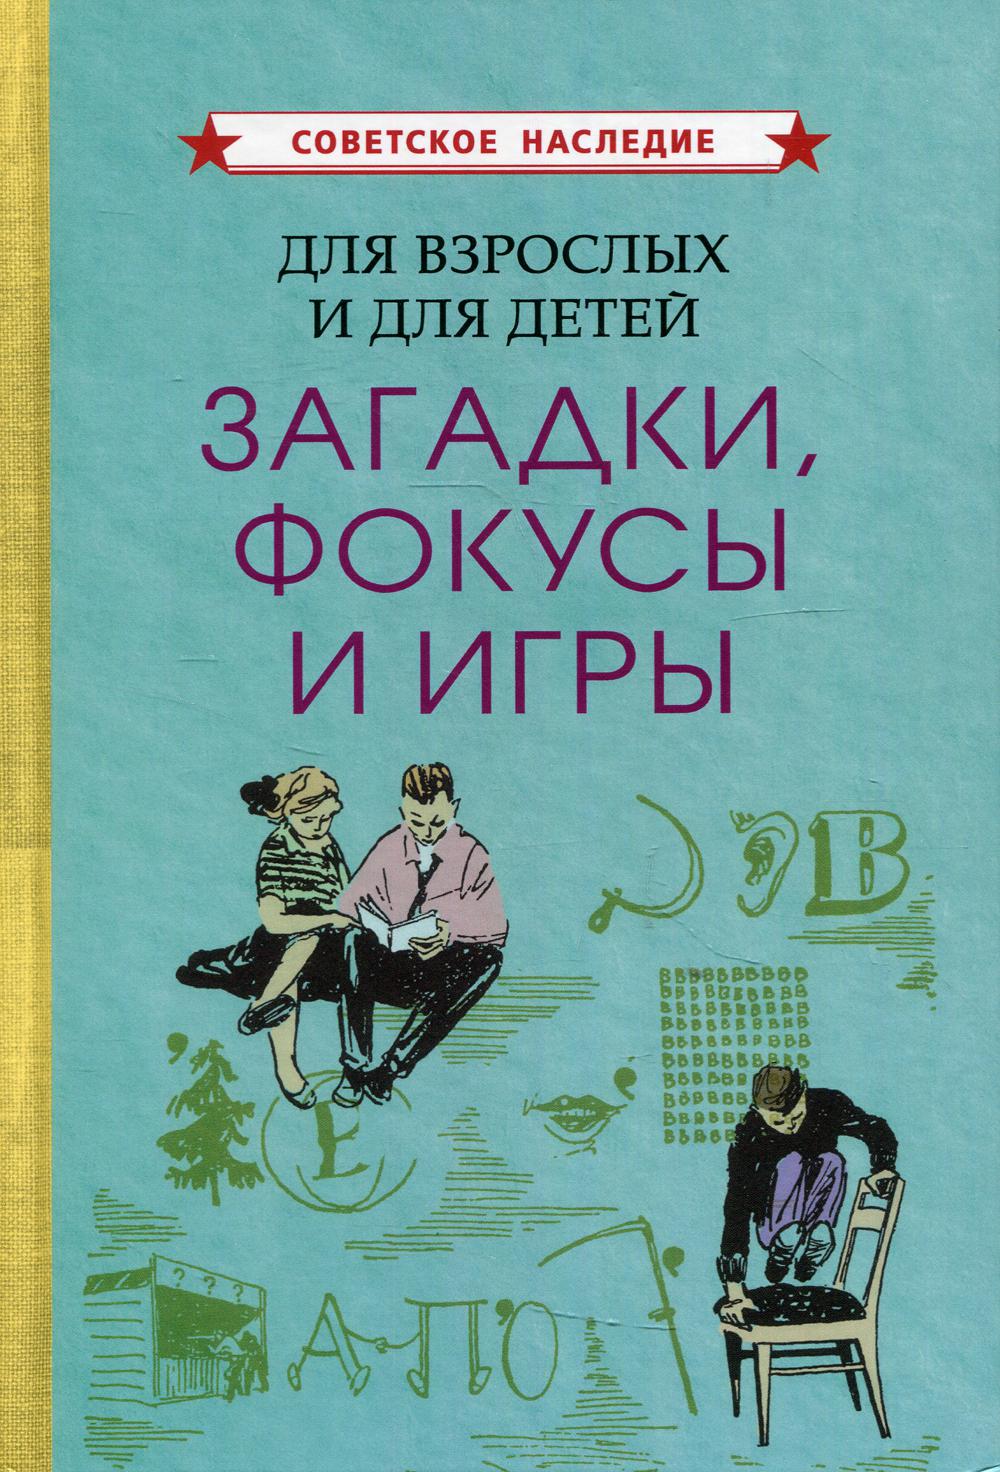 фото Книга для взрослых и для детей. загадки, фокусы и игры советские учебники